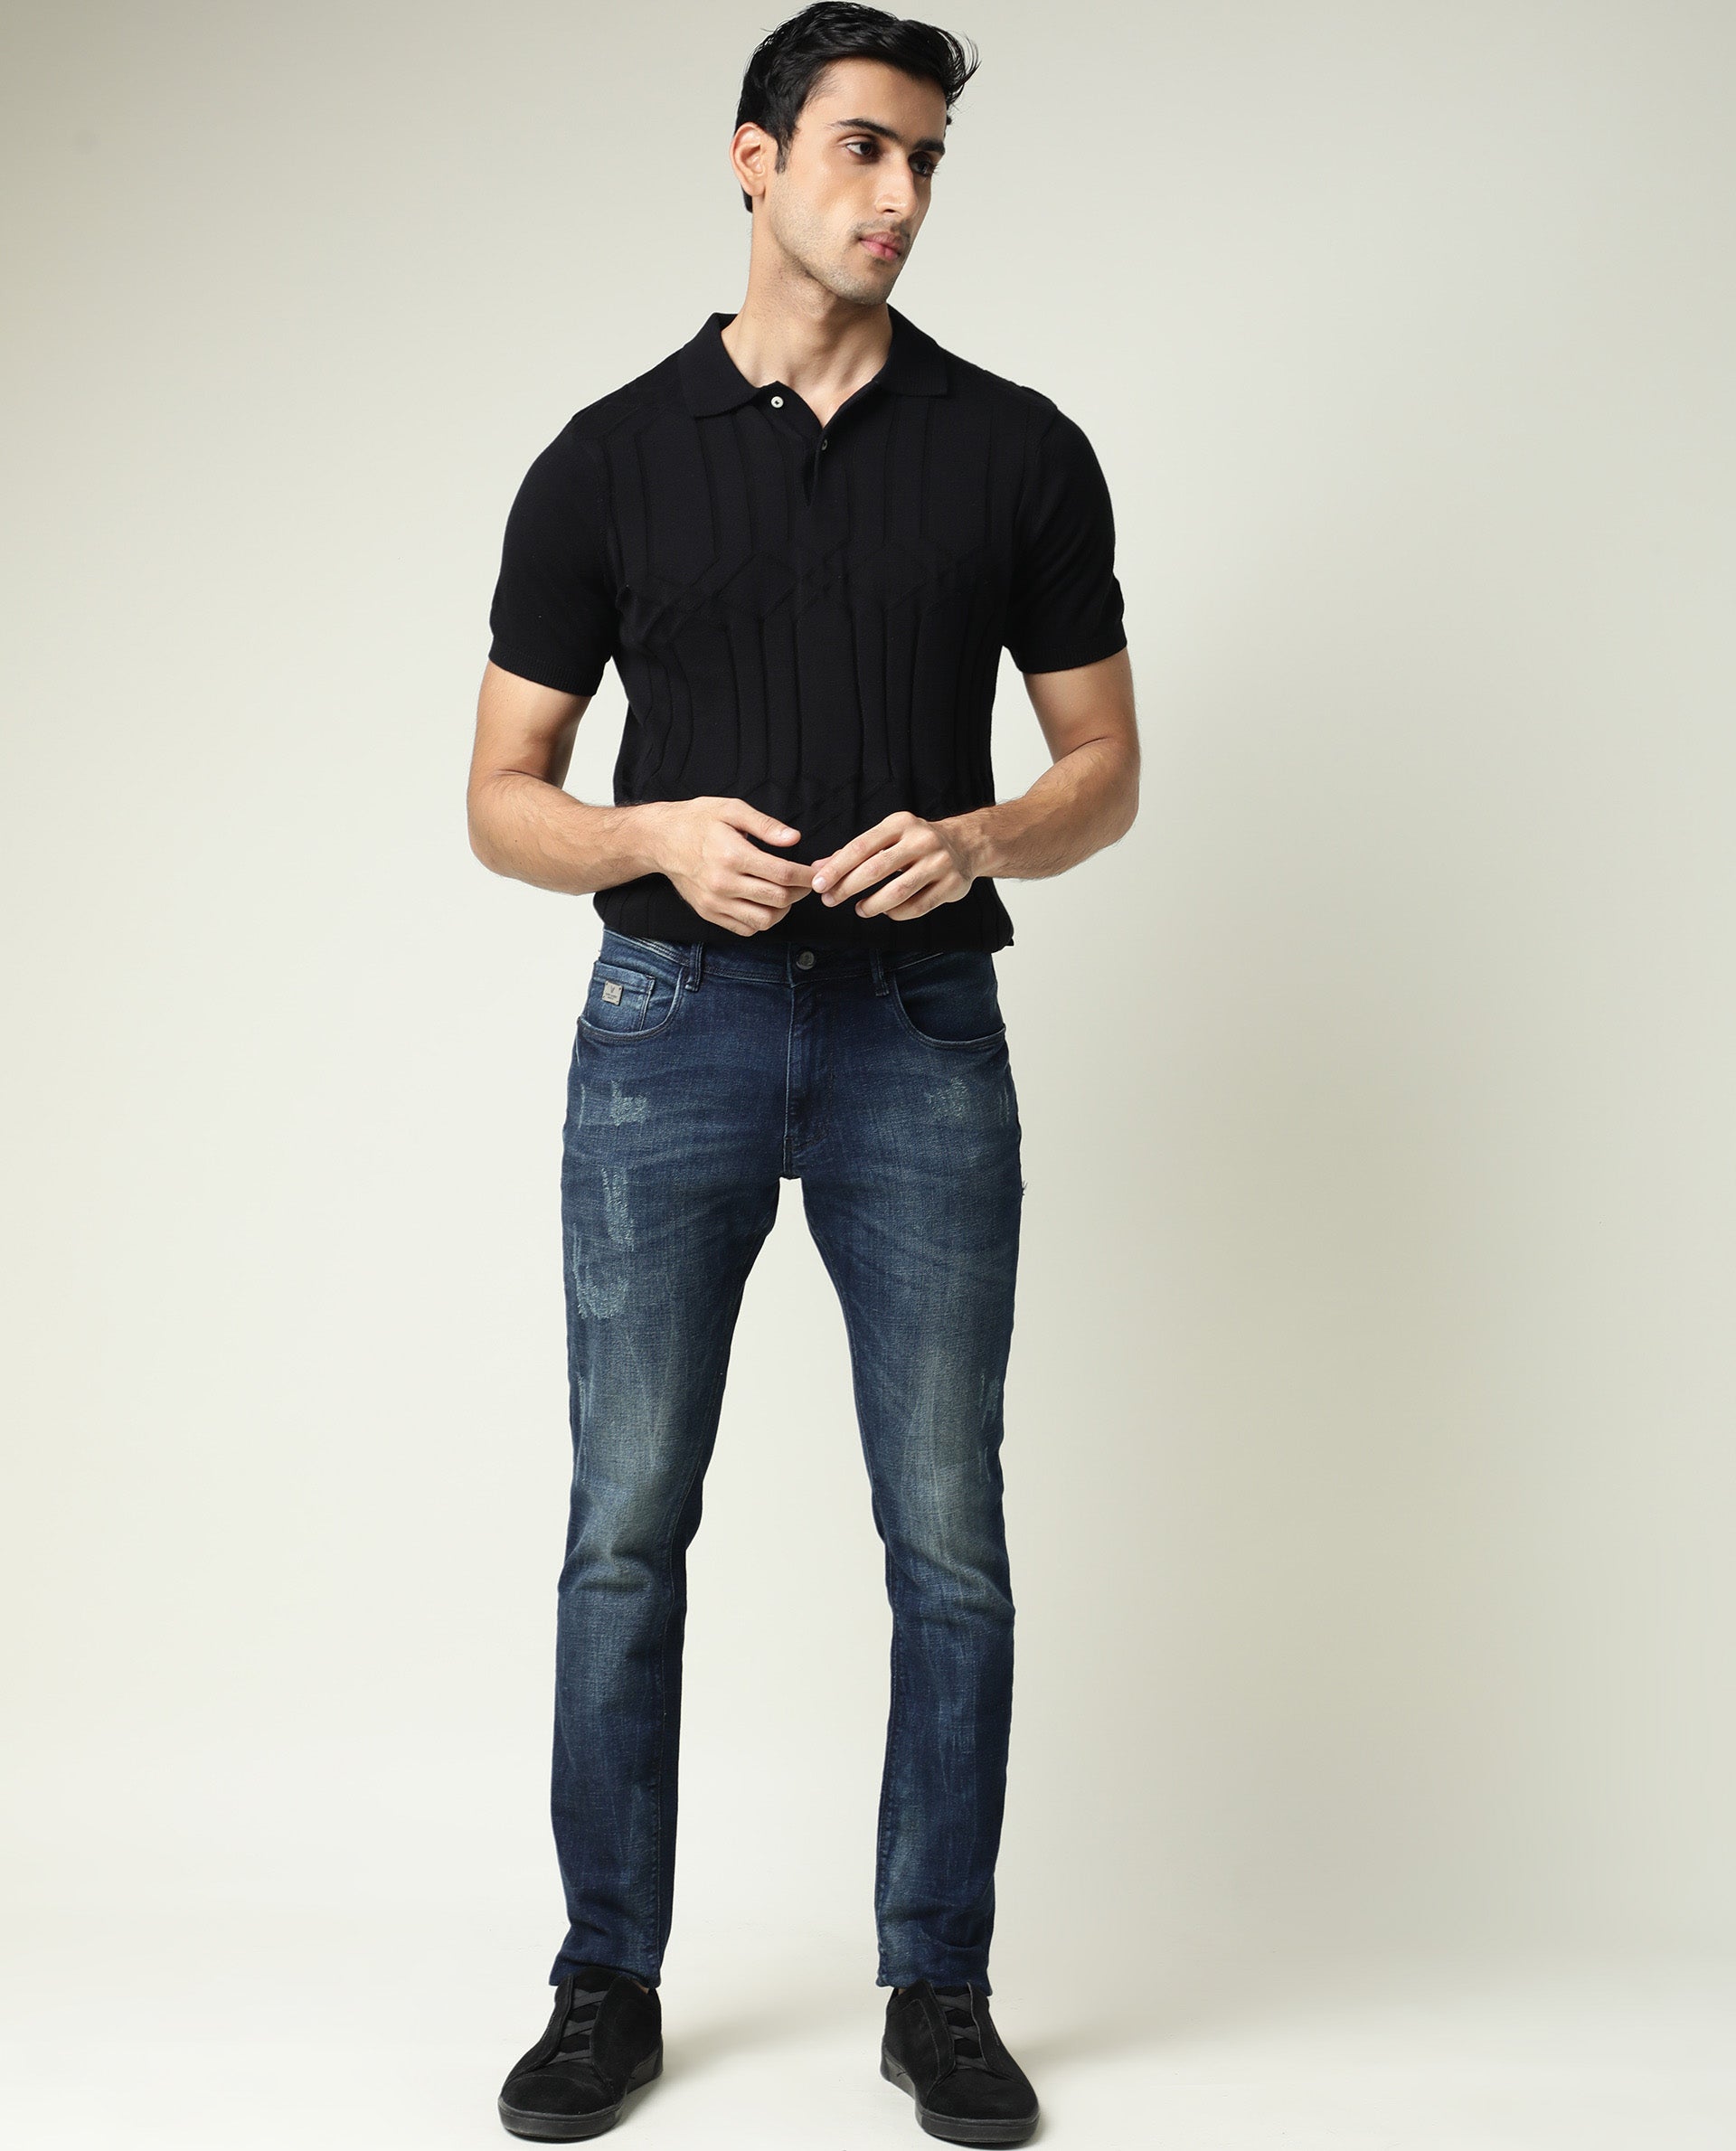 Best JEANS For MEN UNDER 500  best jeans for men flipkart  Best Jeans  under 500  Buyer Expert  YouTube